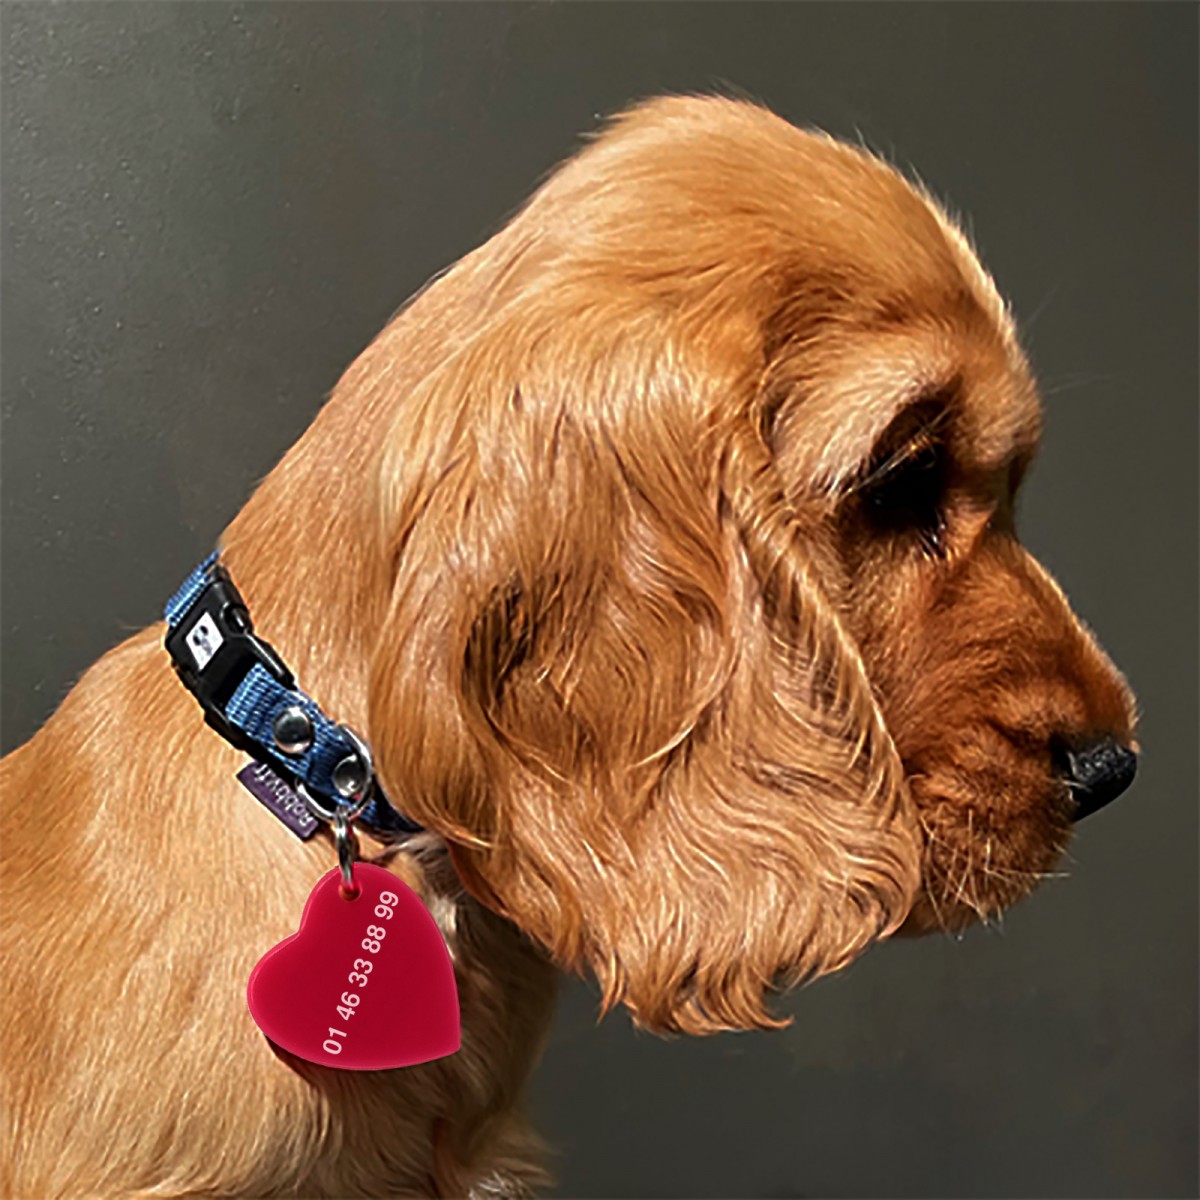 COEUR DE CHIEN - Médaillon pour chien fabriqué à la main par l'atelier Hervé Domar